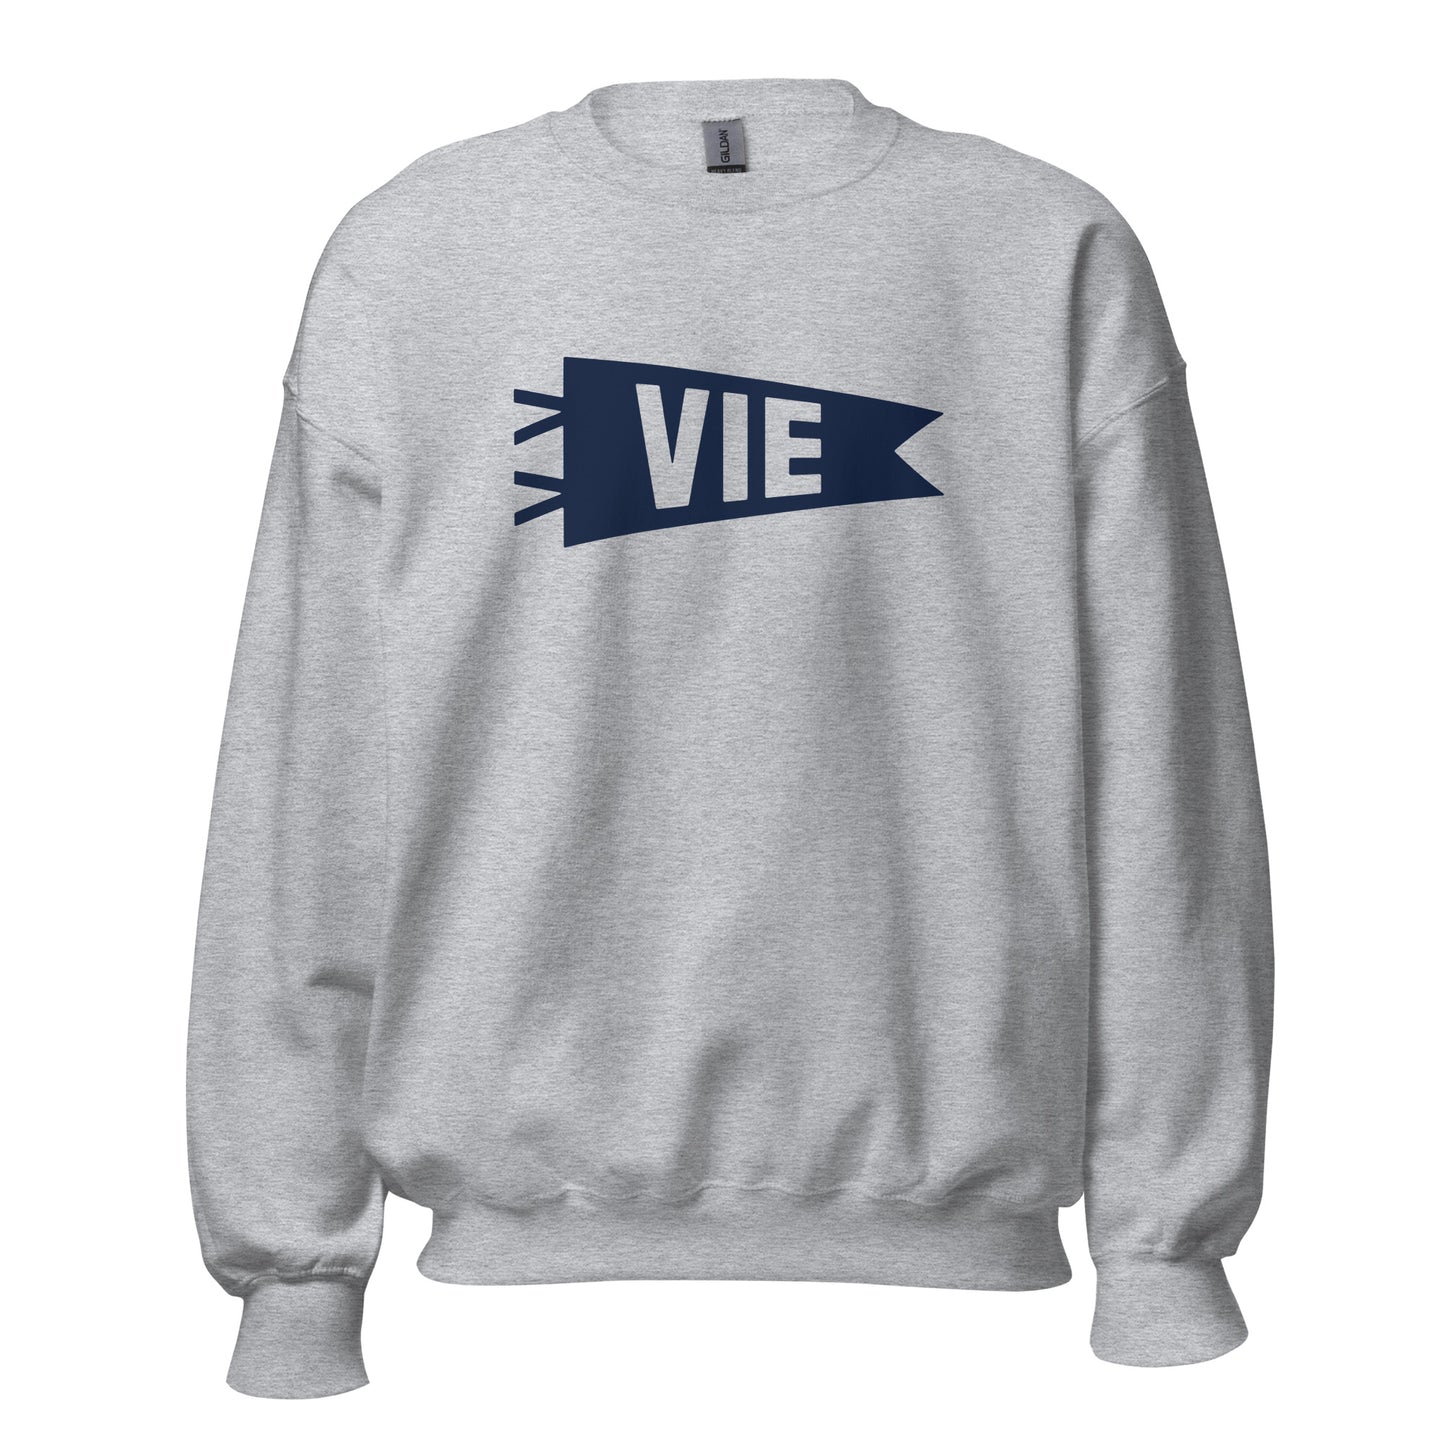 Airport Code Sweatshirt - Navy Blue Graphic • VIE Vienna • YHM Designs - Image 08